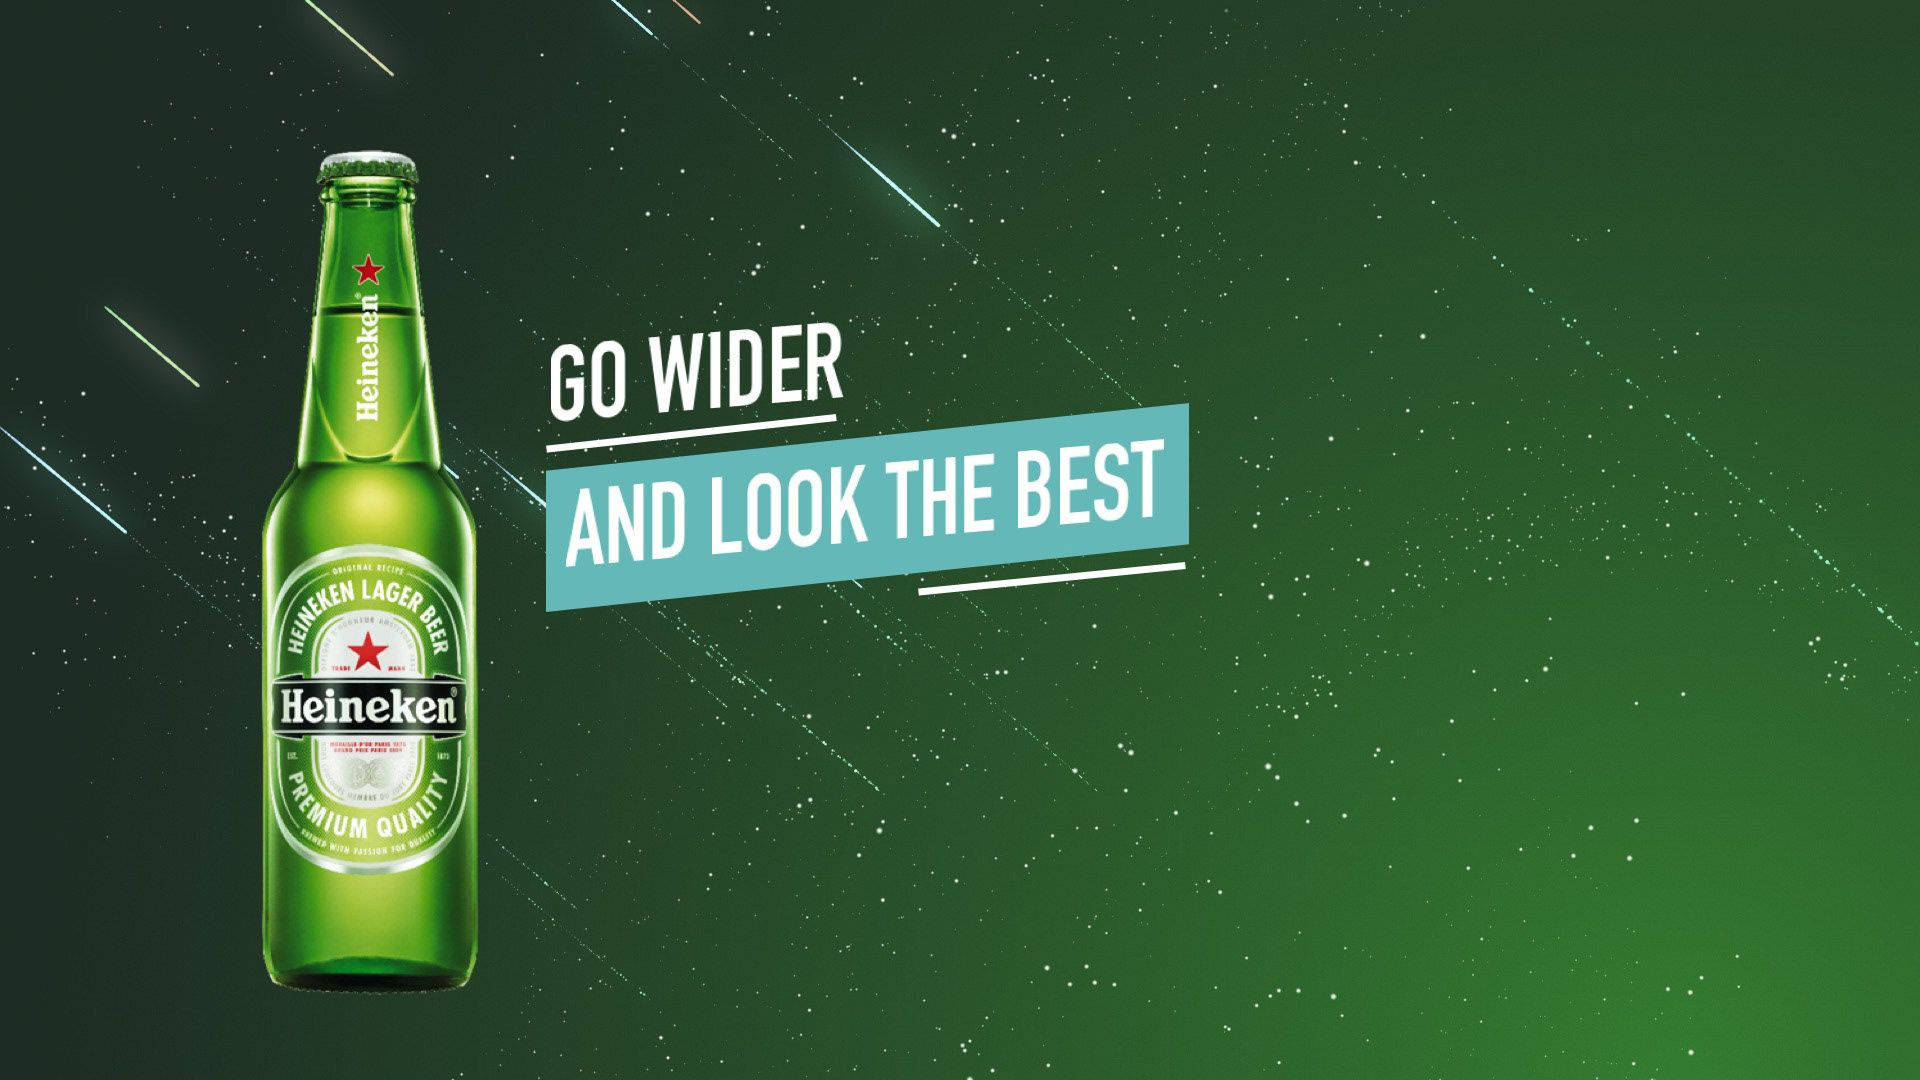 Heineken Go Wider And Look The Best Wallpaper